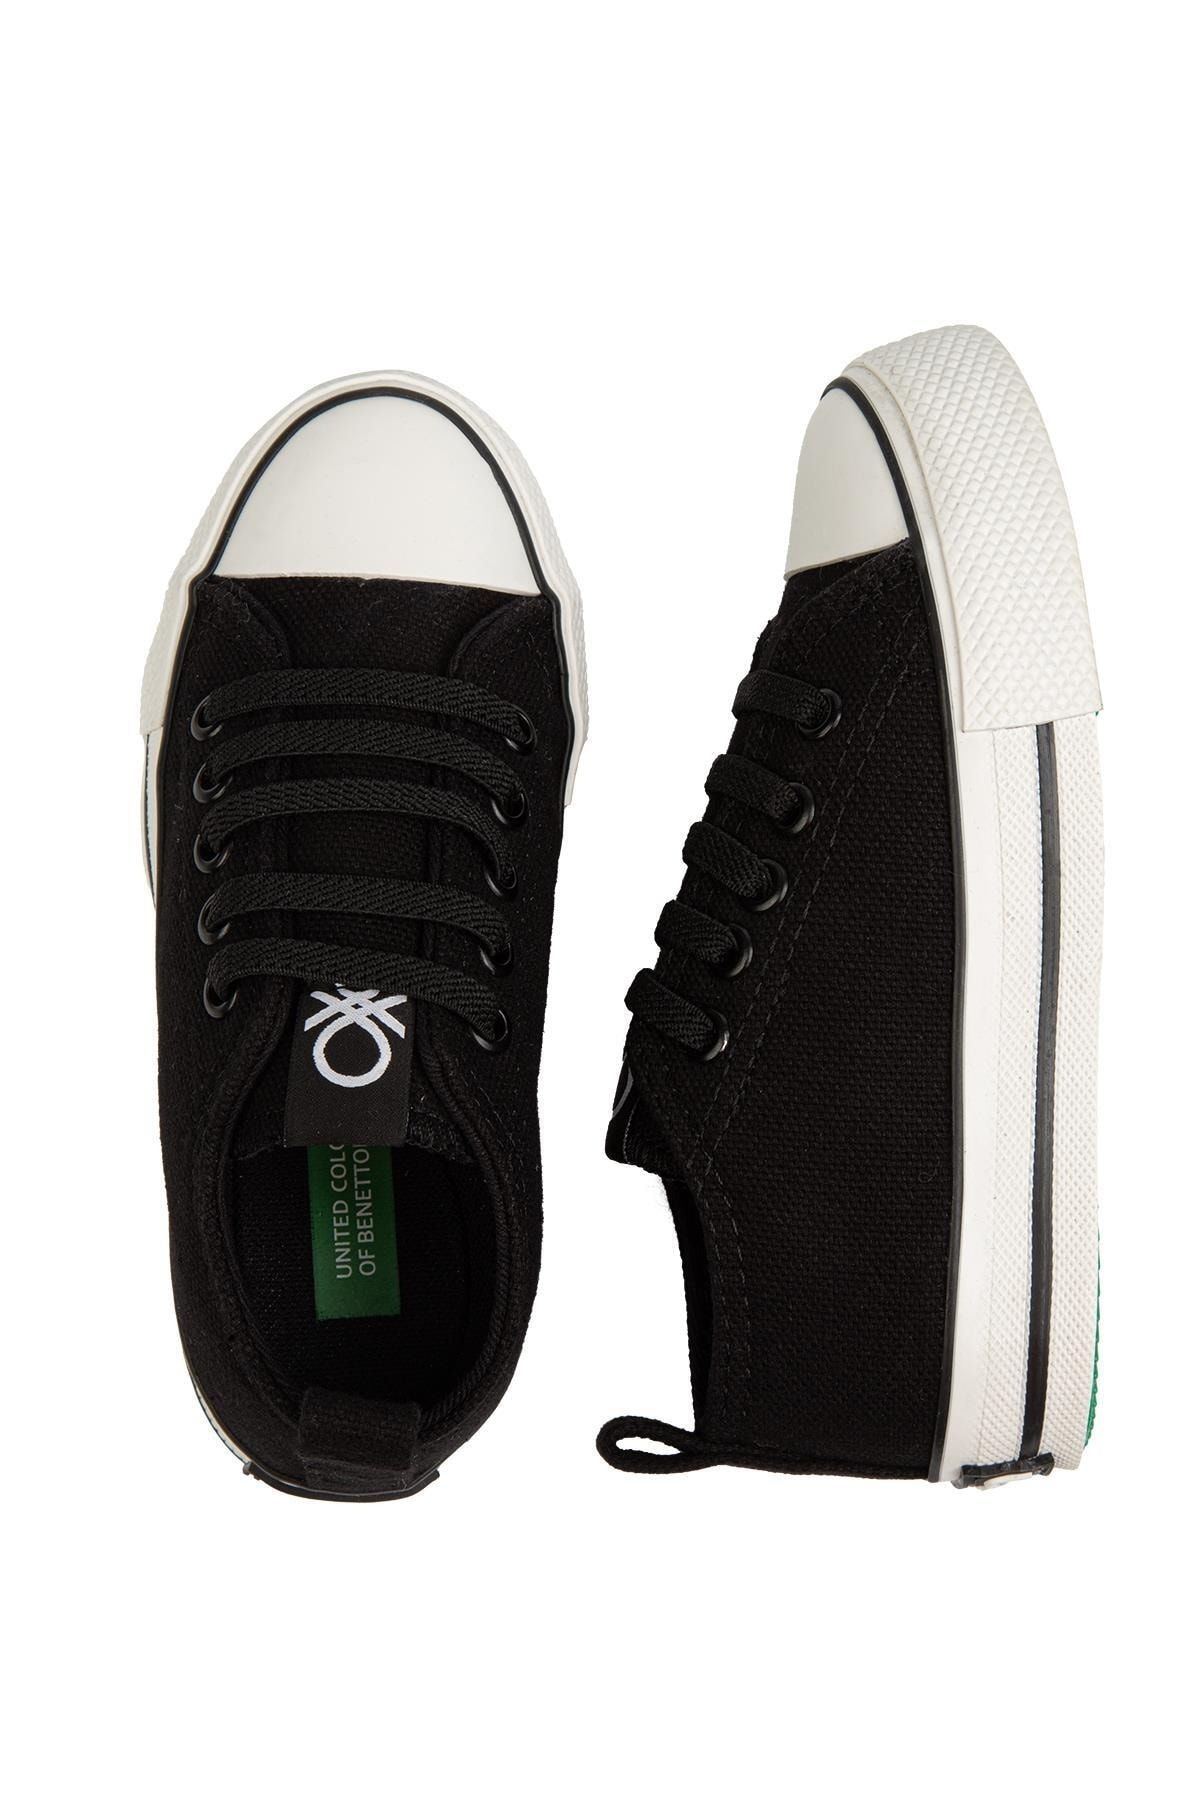 Benetton ® | Bn-30771 - Siyah - Çocuk Spor Ayakkabı